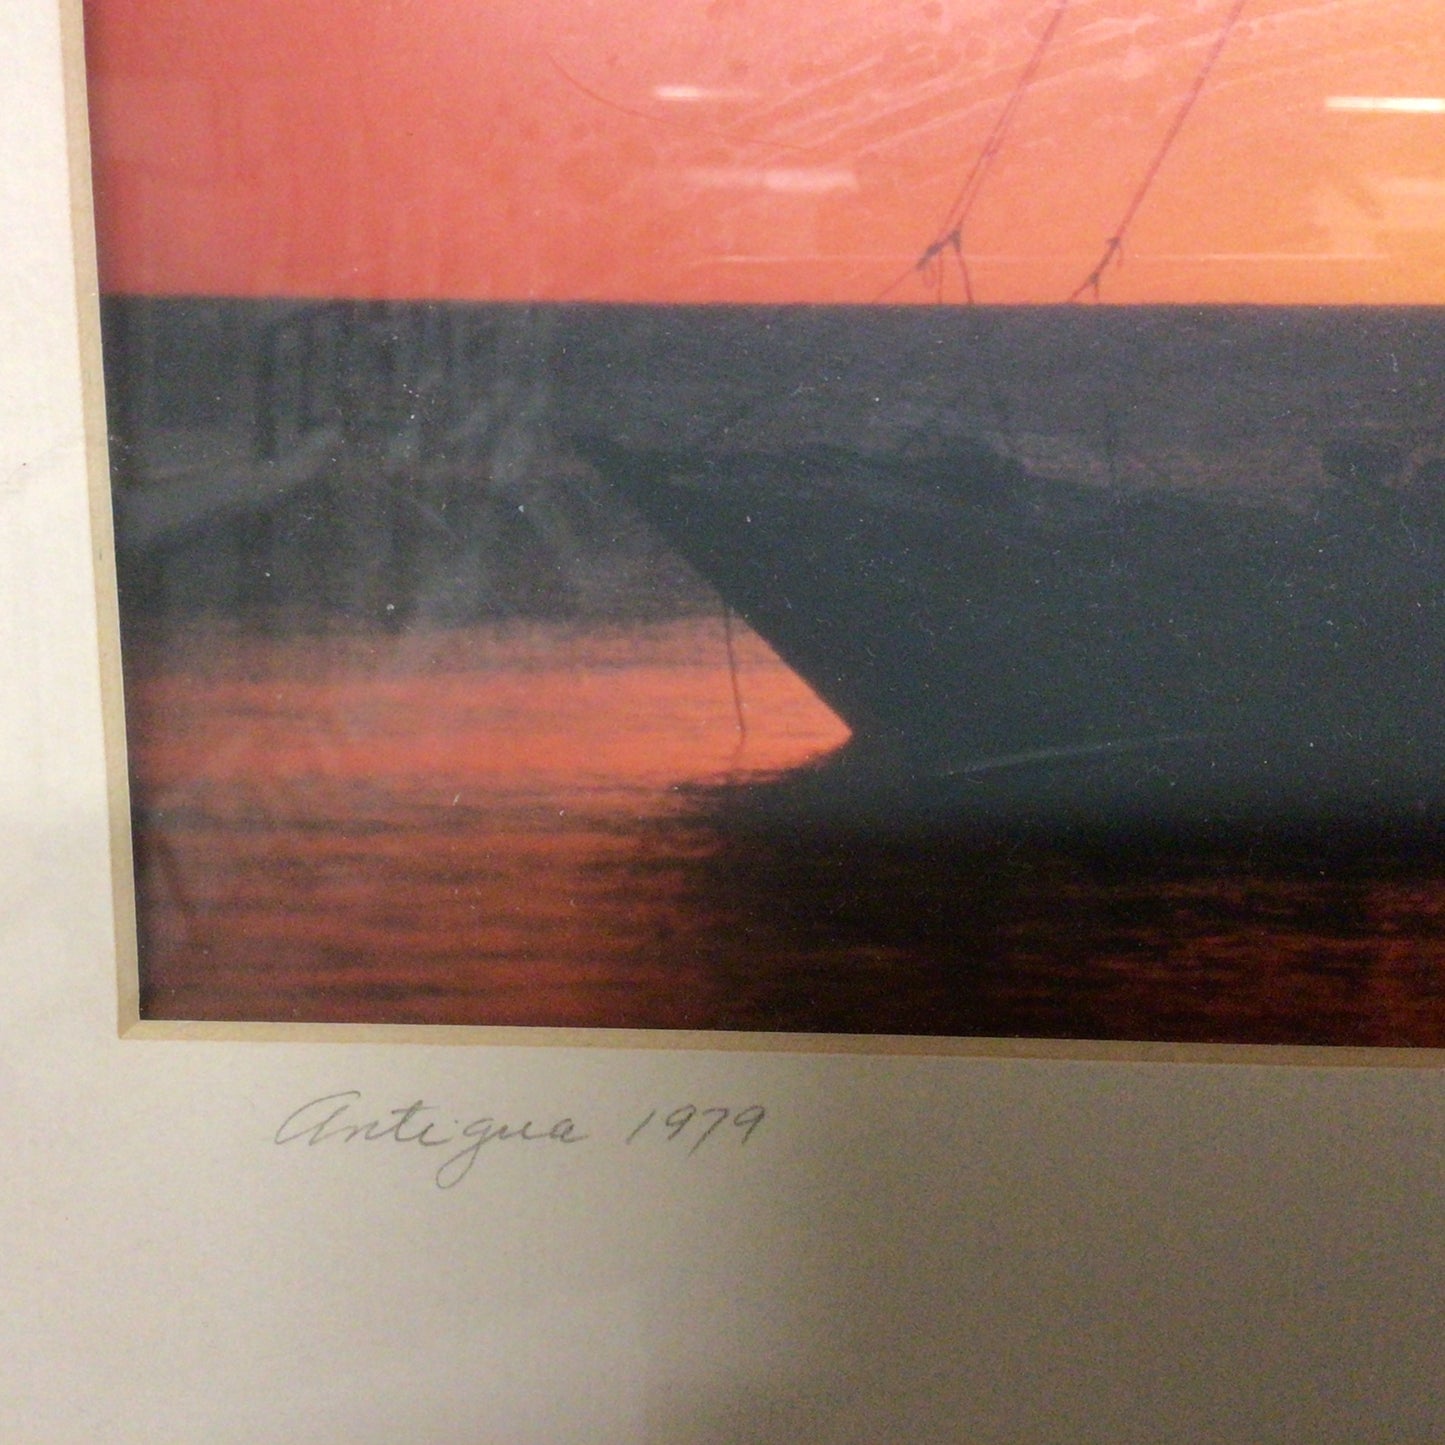 Framed & Signed “Antigua 1979” Print